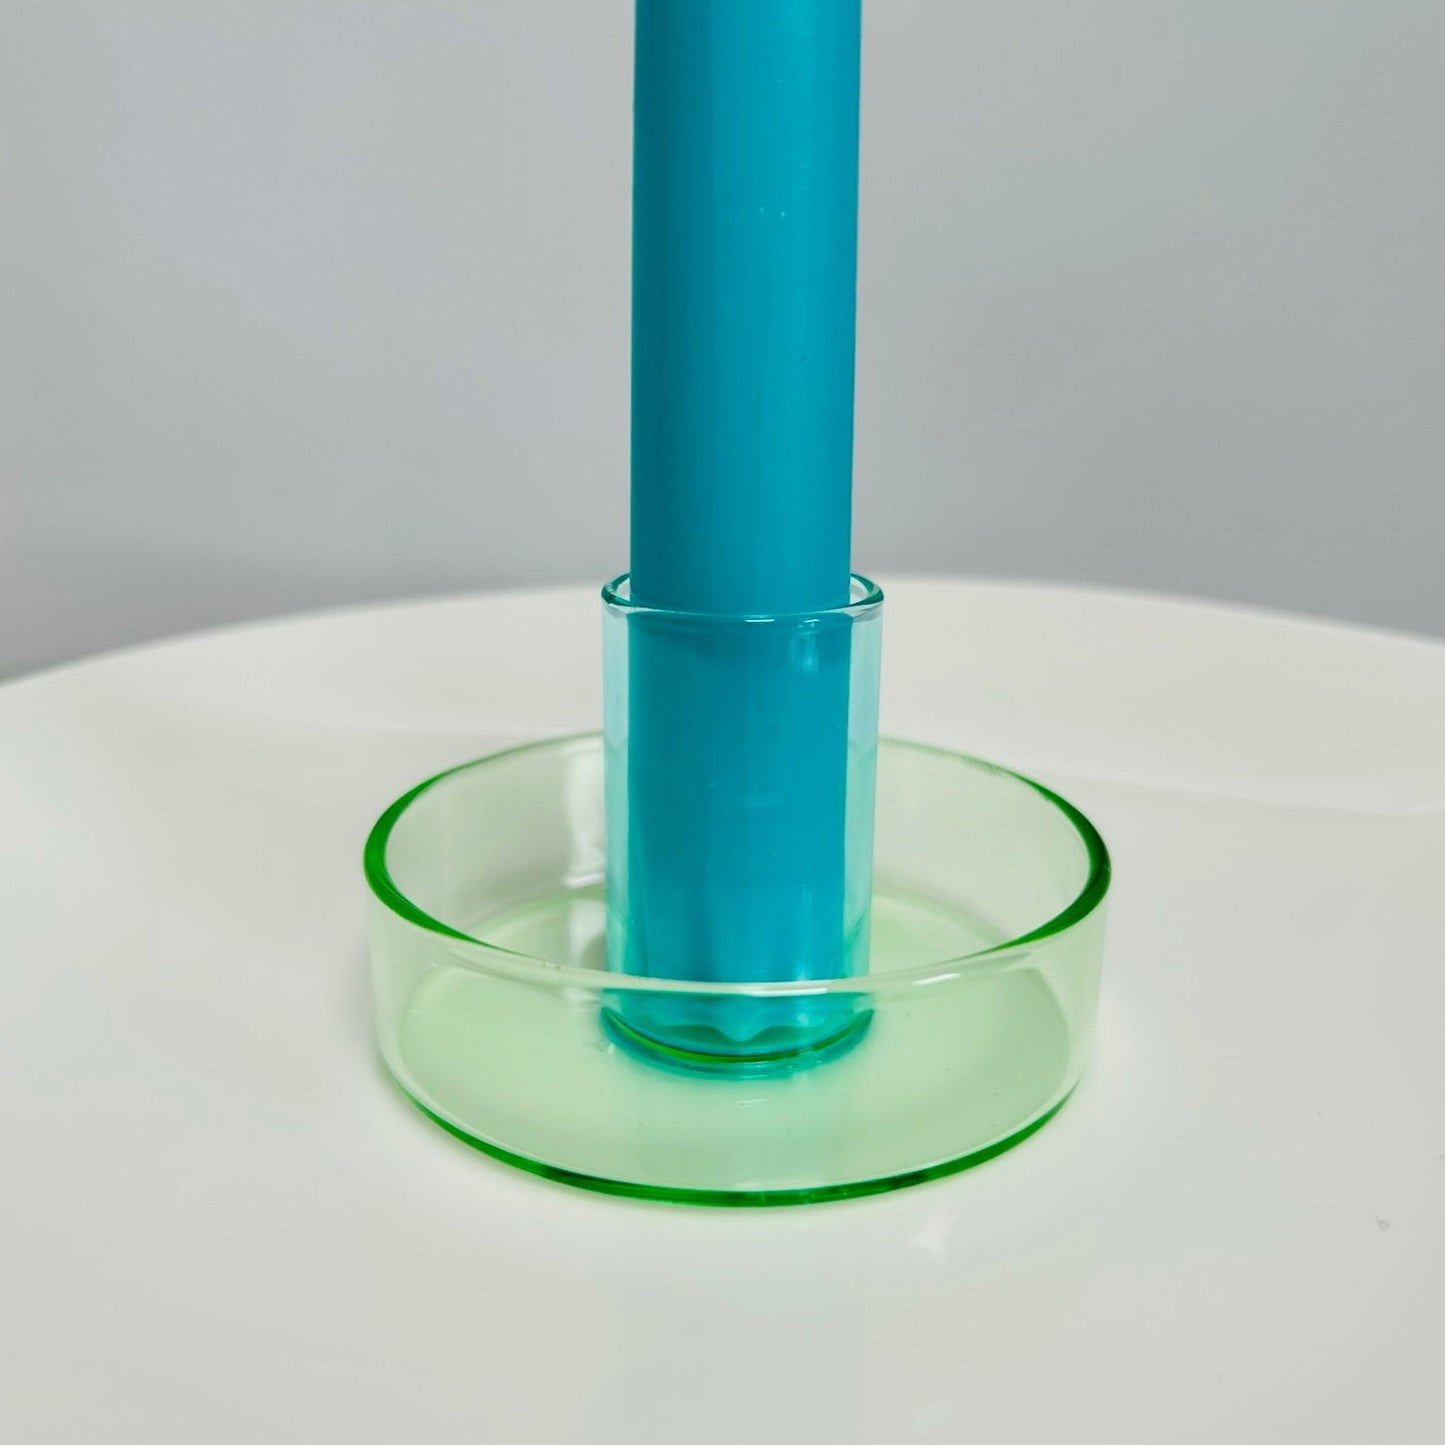 Glass Candlestick Holder - Green & Blue